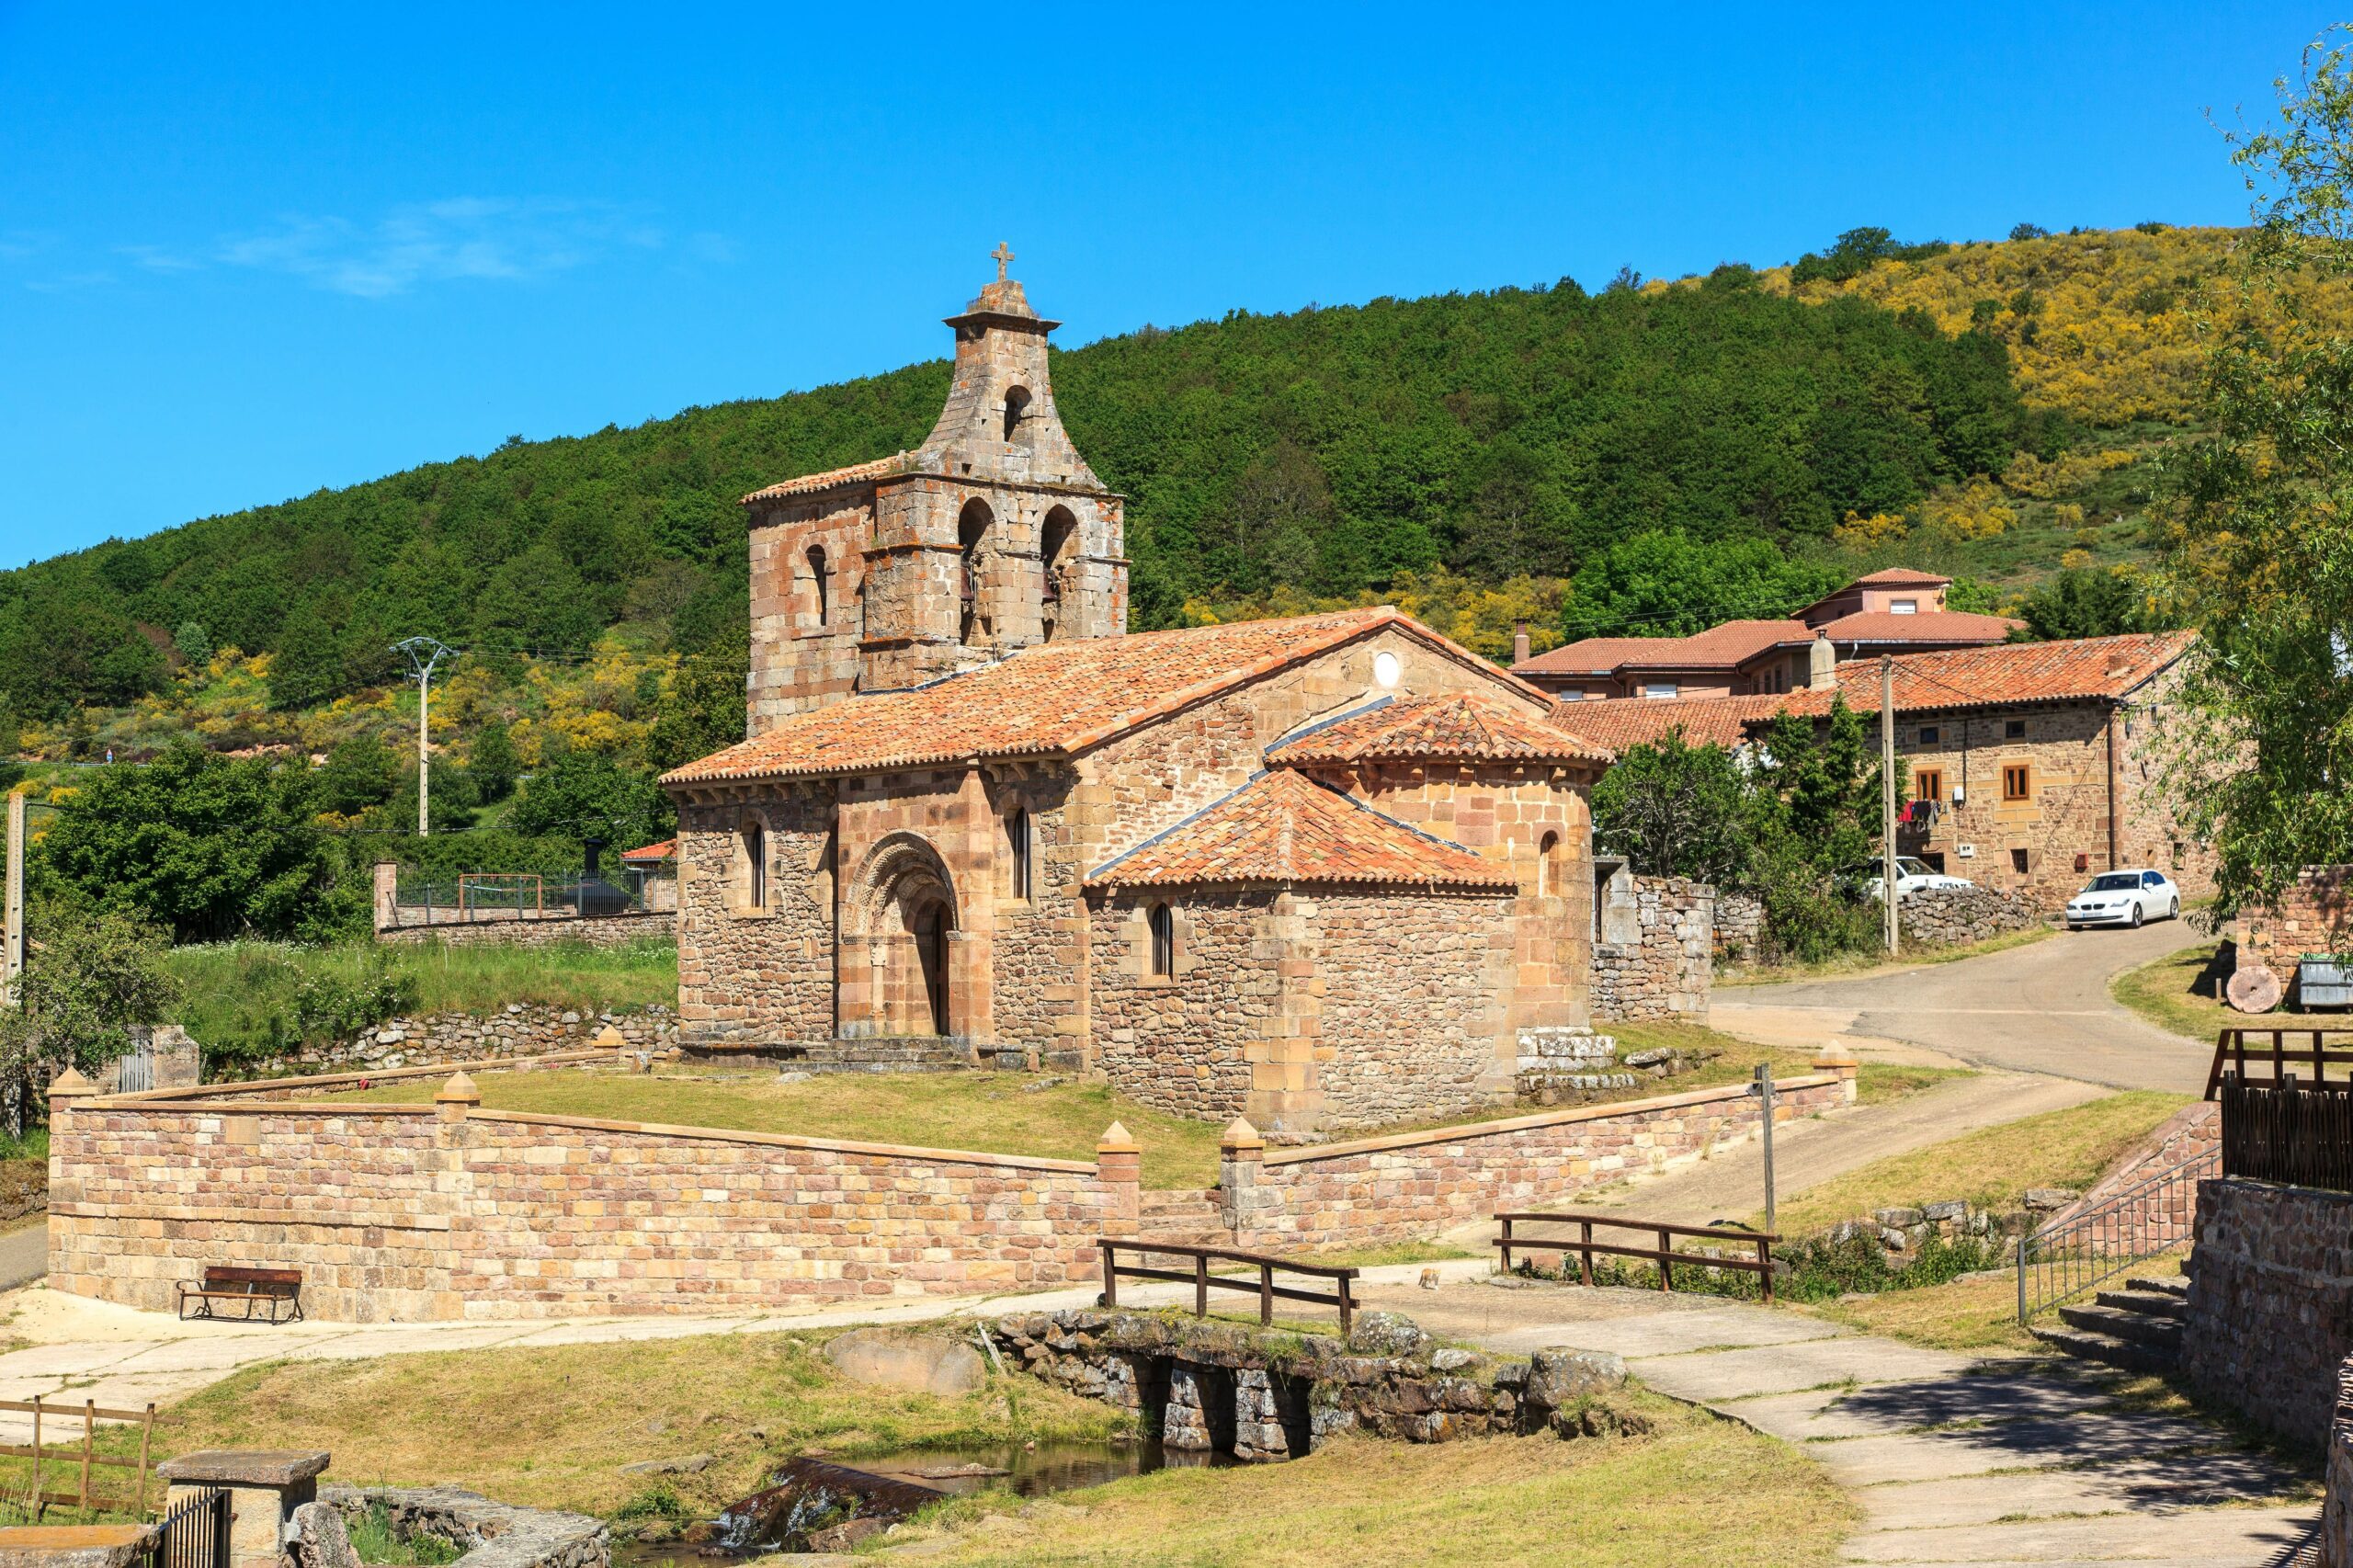 Este es el pueblo más pequeño de Castilla y León: está en mitad de la naturaleza y por él pasa una de las rutas históricas de España